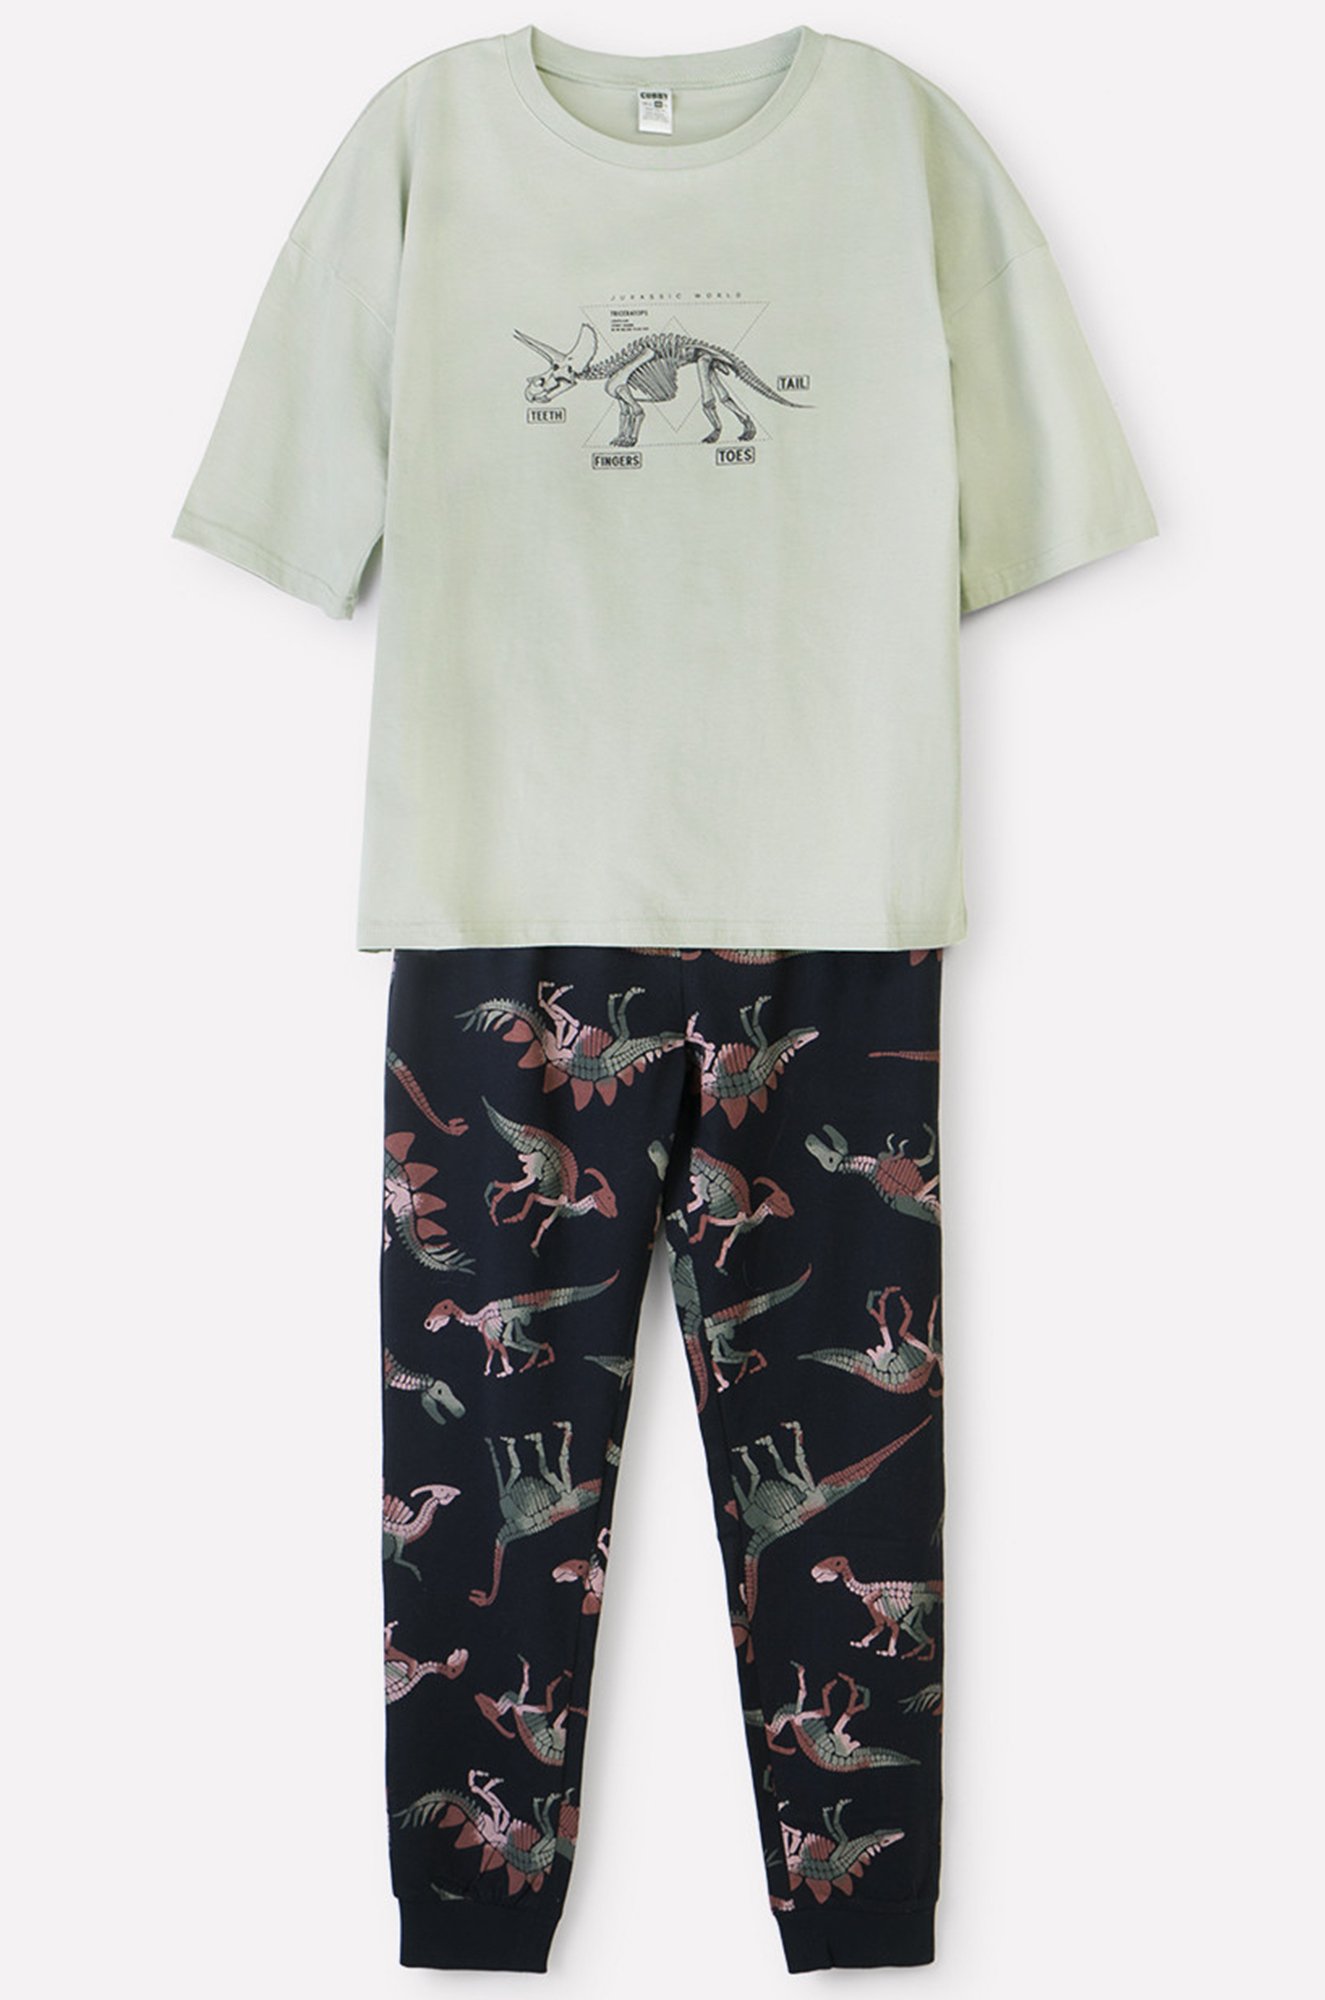 Трикотажная пижама из натурального хлопка для мальчика Cubby